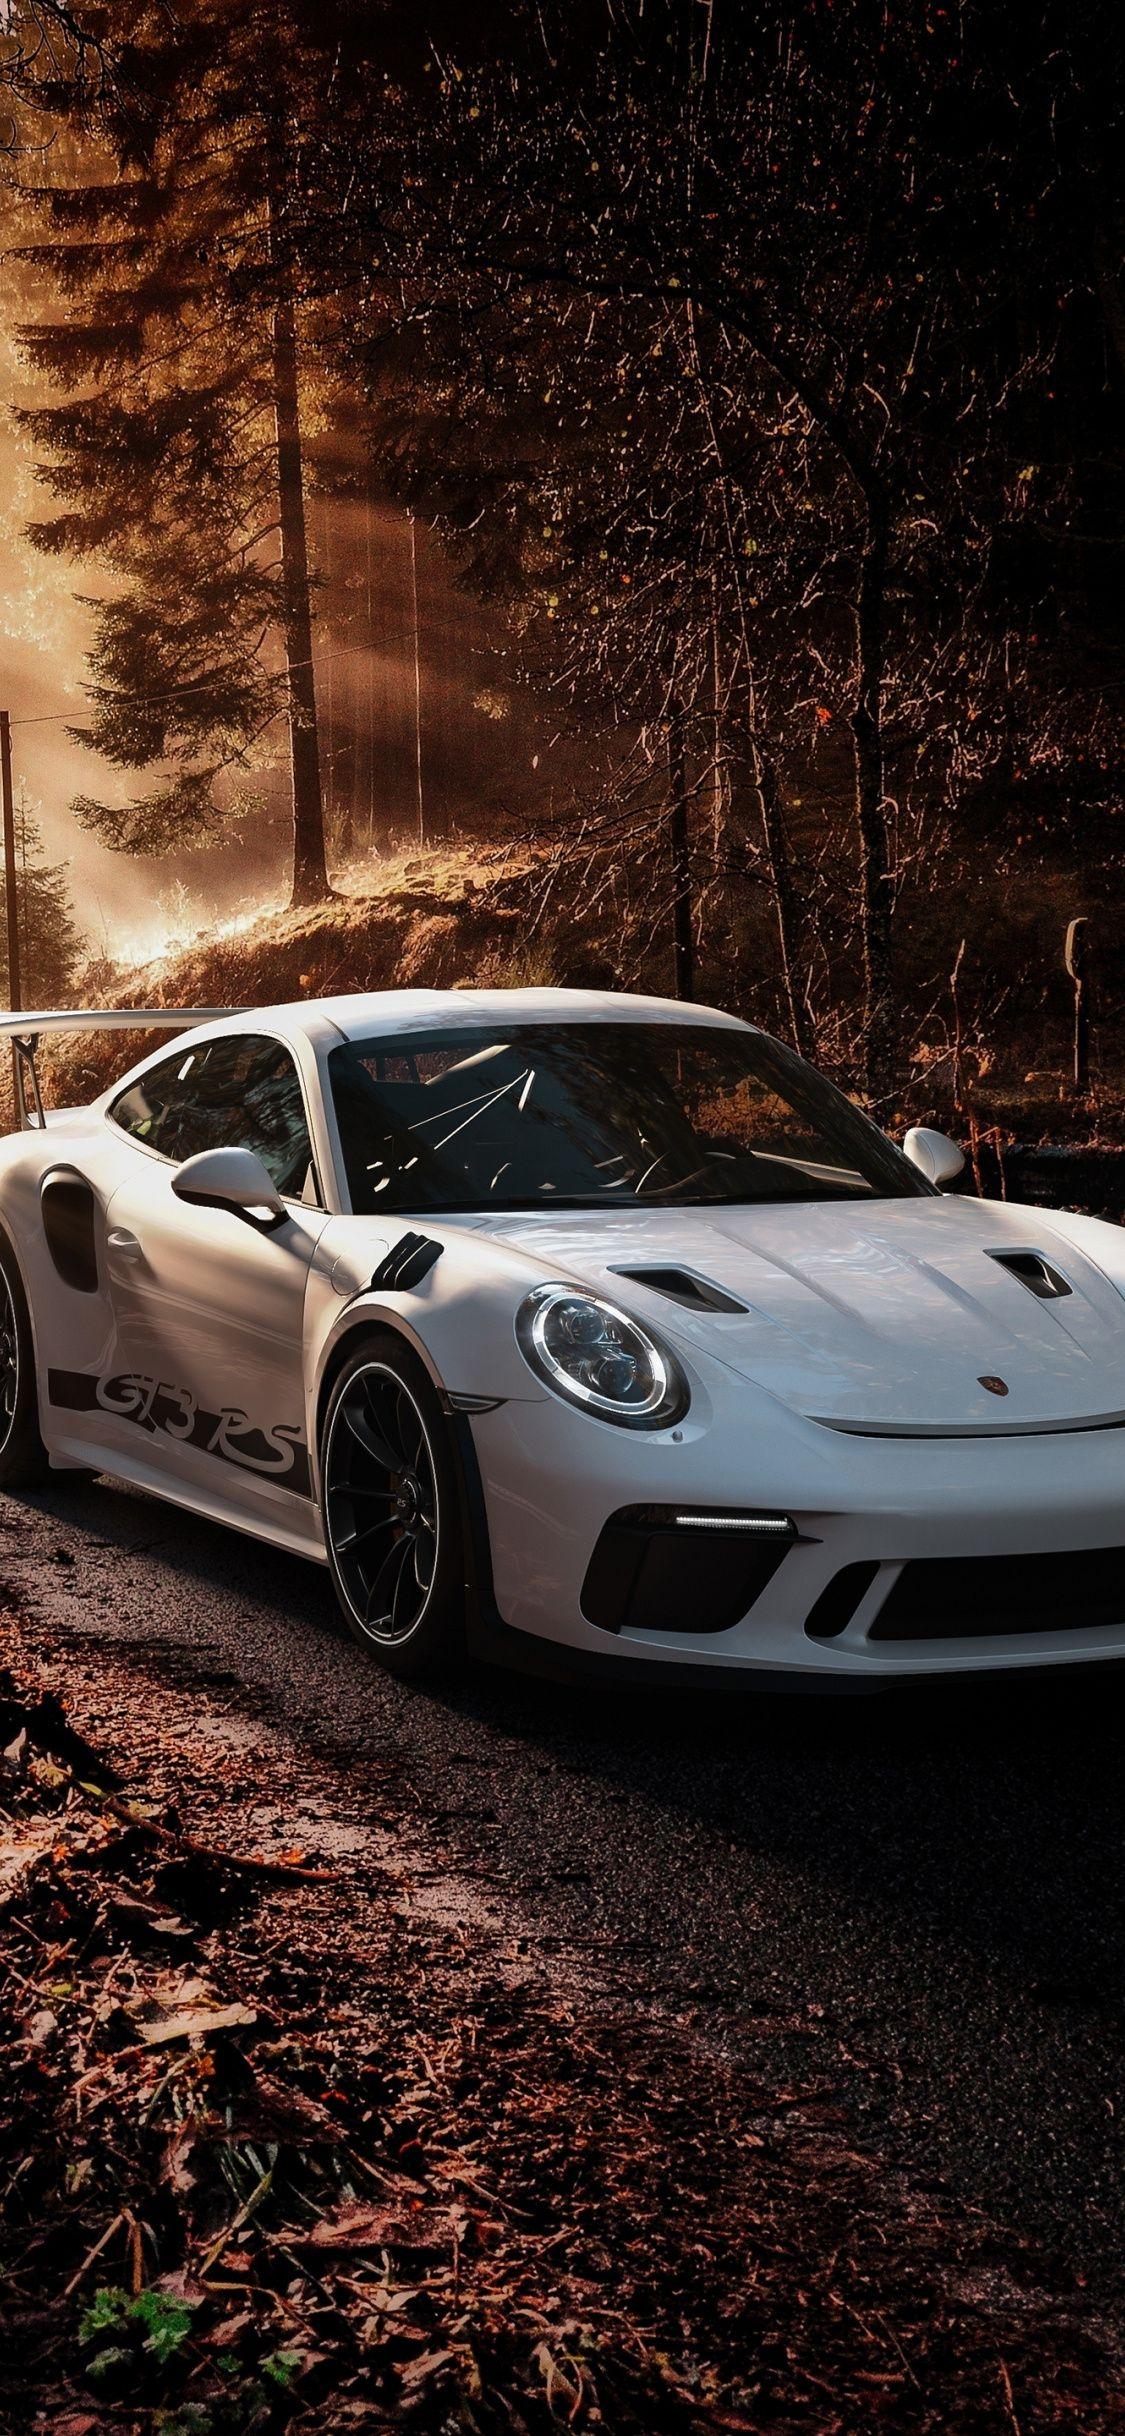 Porsche 911 iPhone Wallpapers